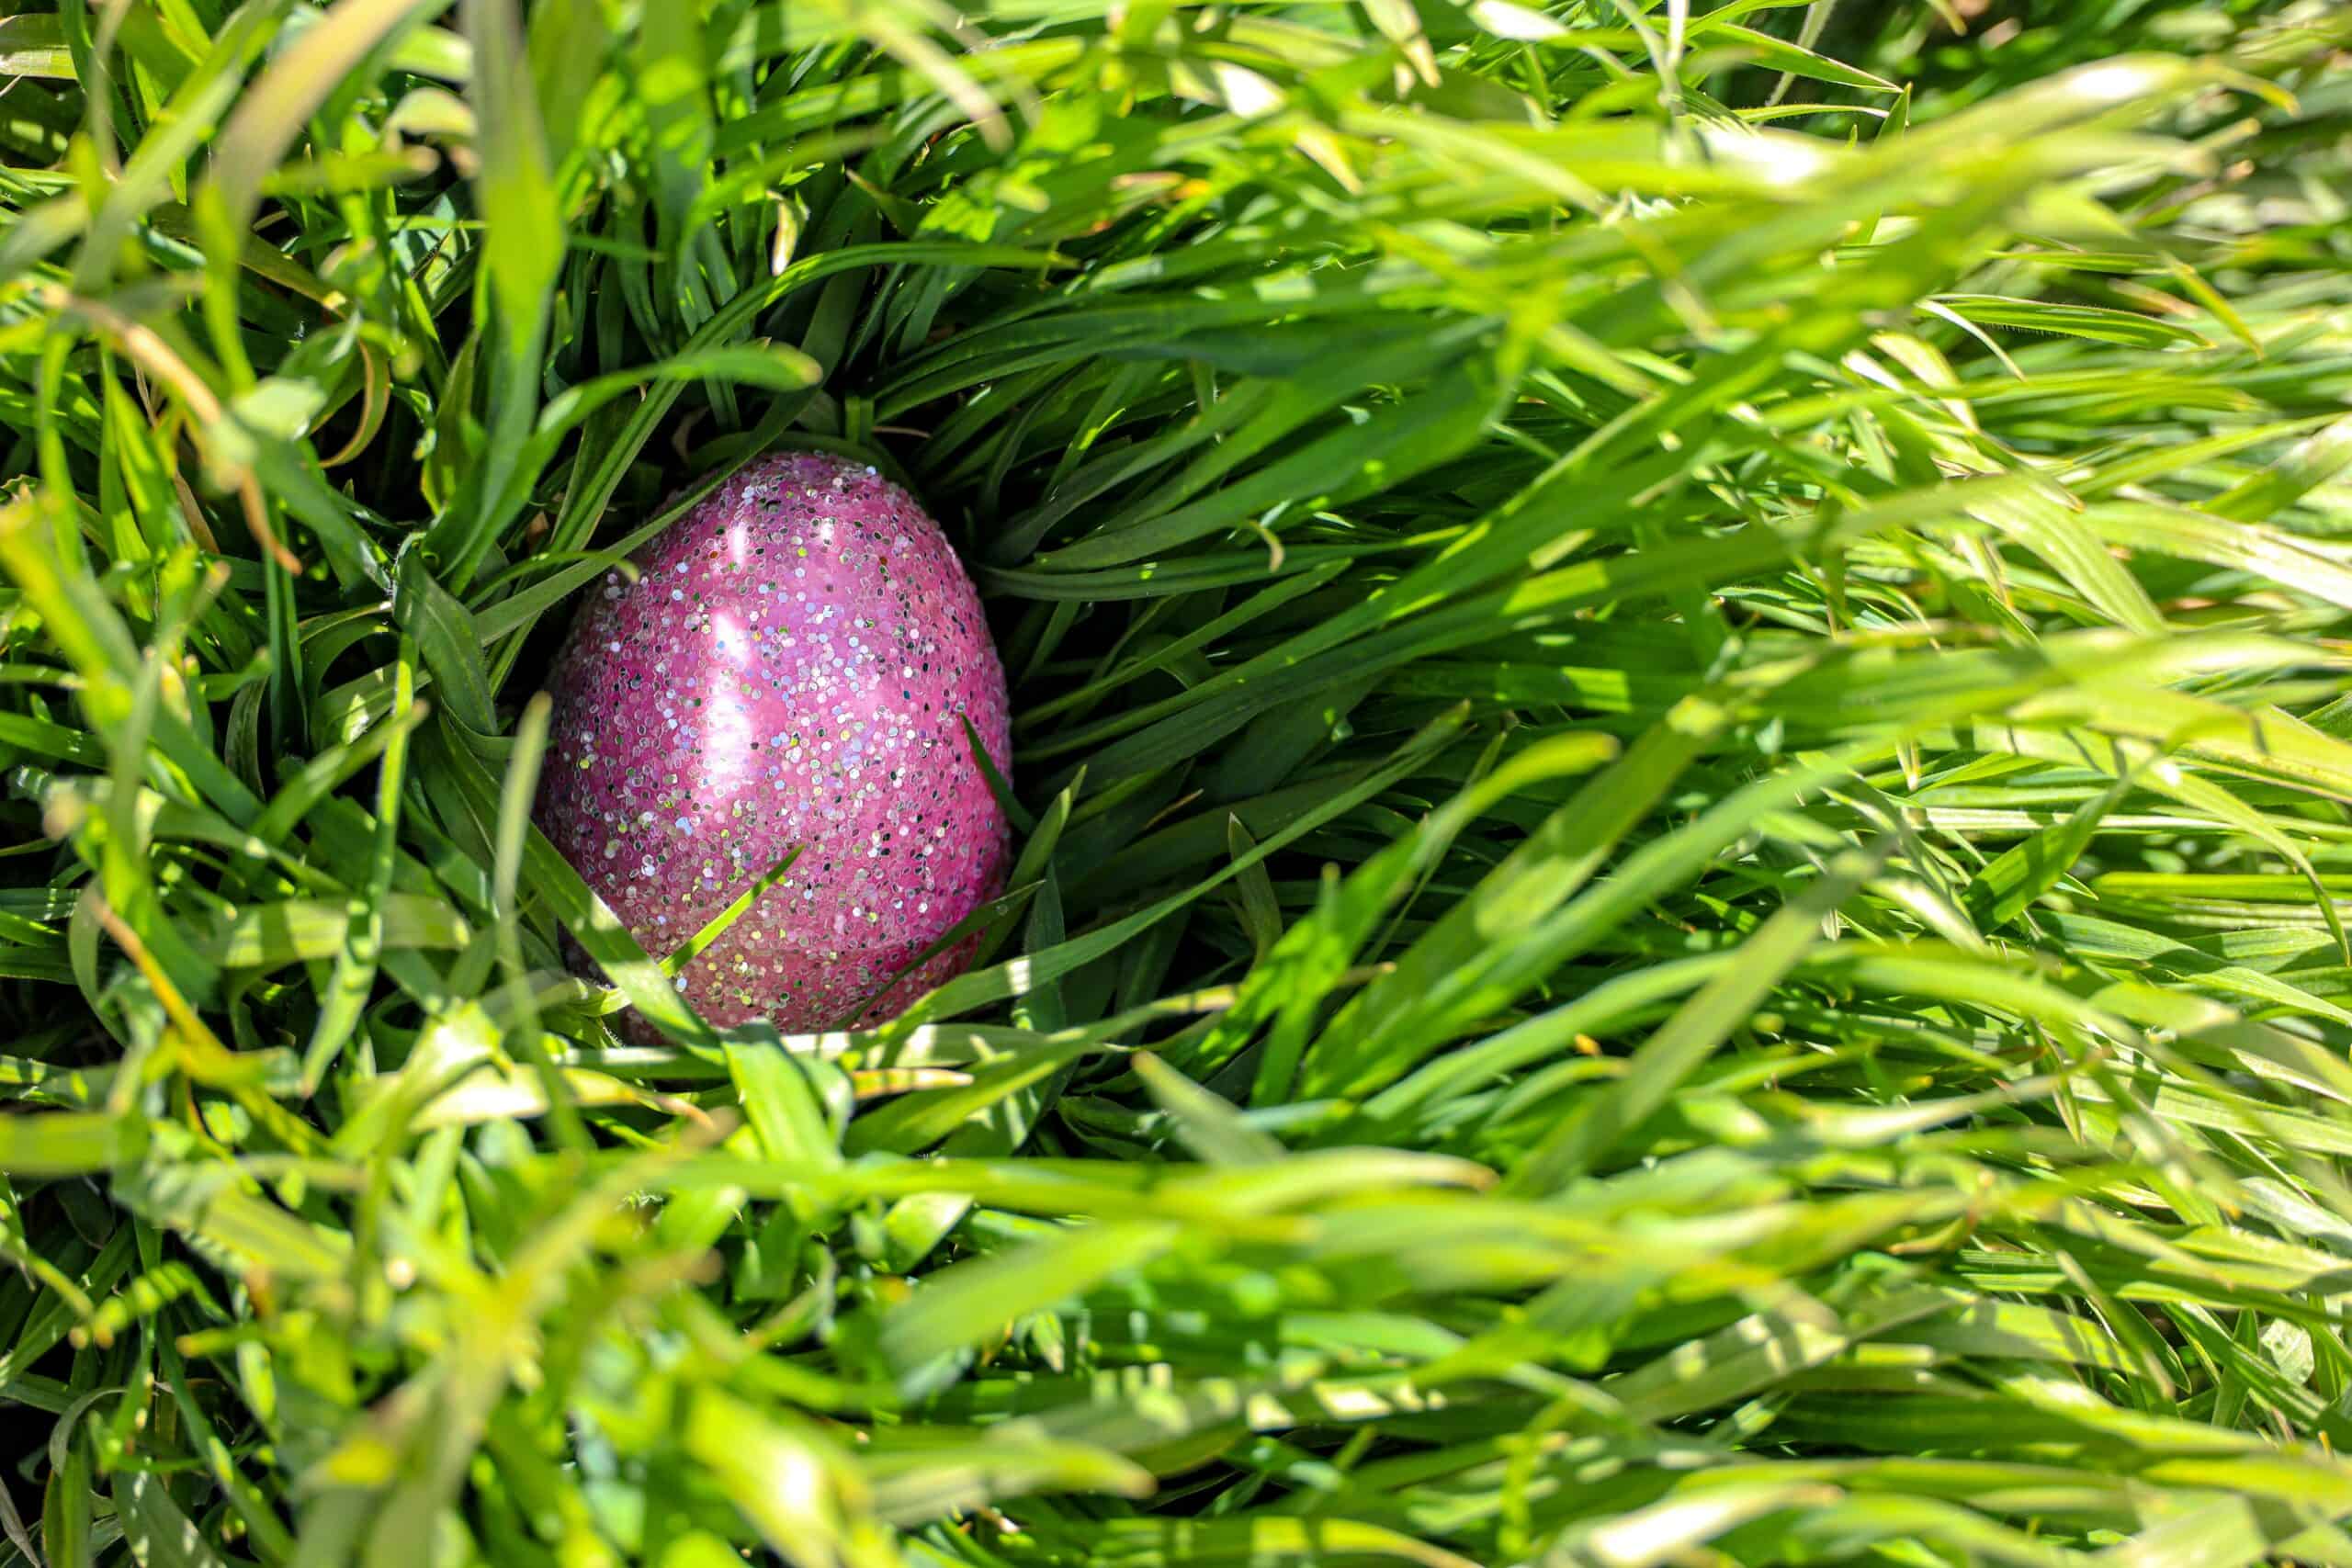 Easter Egg Hunt in Mesta Park